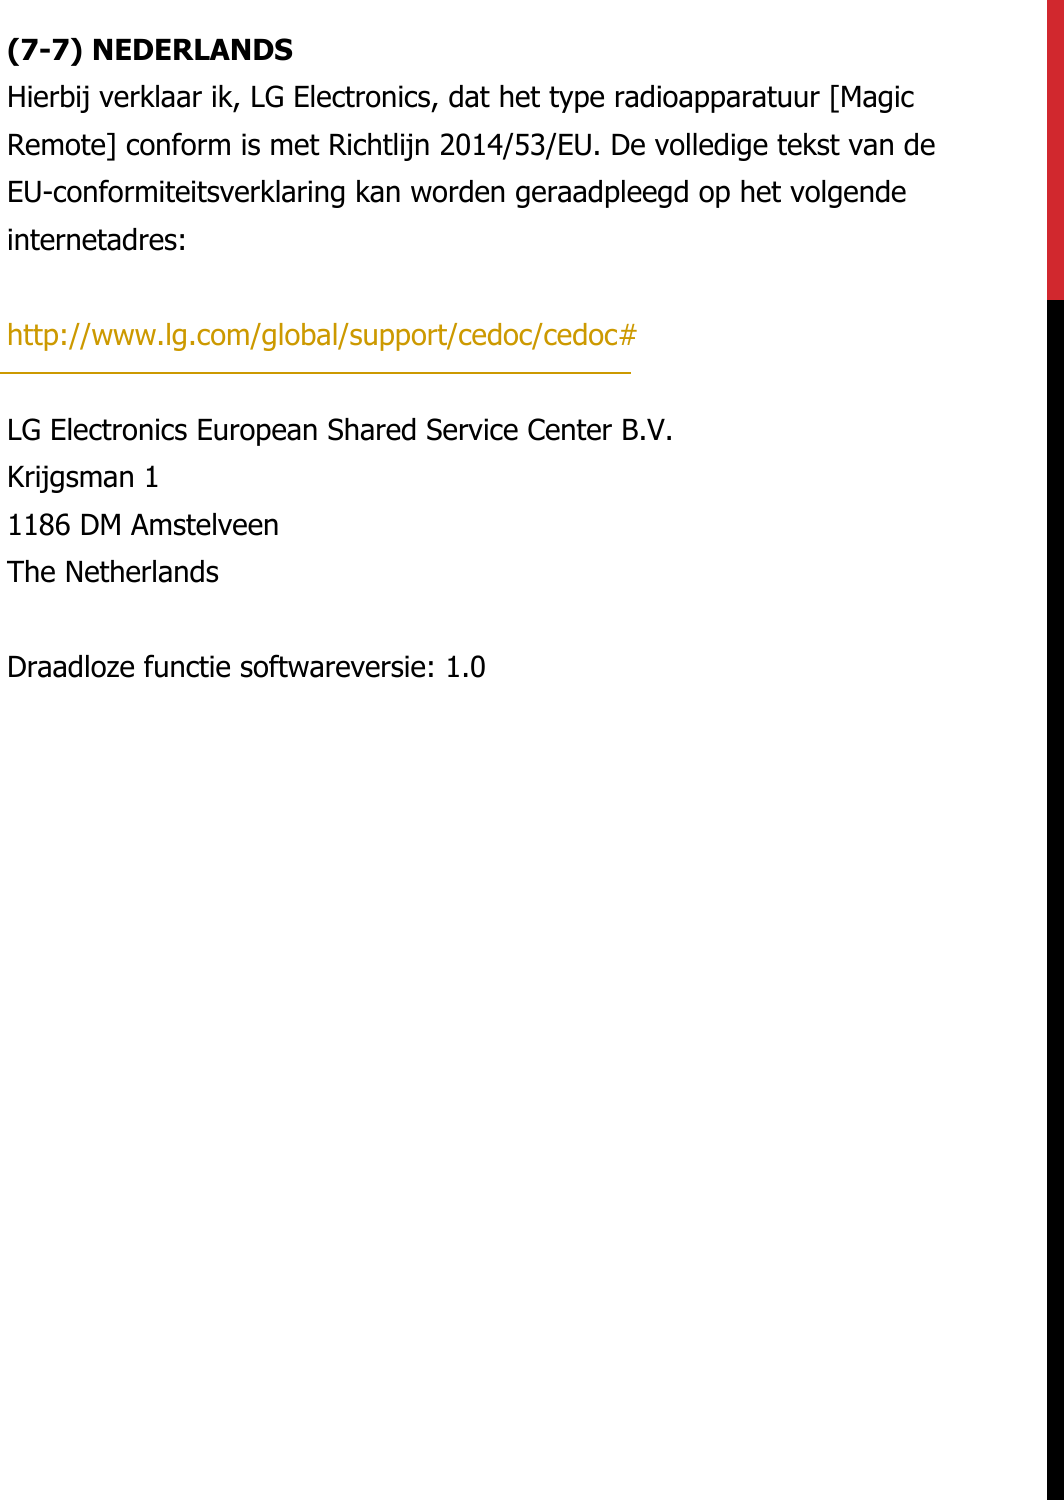 (7-7) NEDERLANDS Hierbij verklaar ik, LG Electronics, dat het type radioapparatuur [Magic Remote] conform is met Richtlijn 2014/53/EU. De volledige tekst van de EU-conformiteitsverklaring kan worden geraadpleegd op het volgende internetadres:   http://www.lg.com/global/support/cedoc/cedoc#   LG Electronics European Shared Service Center B.V.  Krijgsman 1  1186 DM Amstelveen  The Netherlands   Draadloze functie softwareversie: 1.0